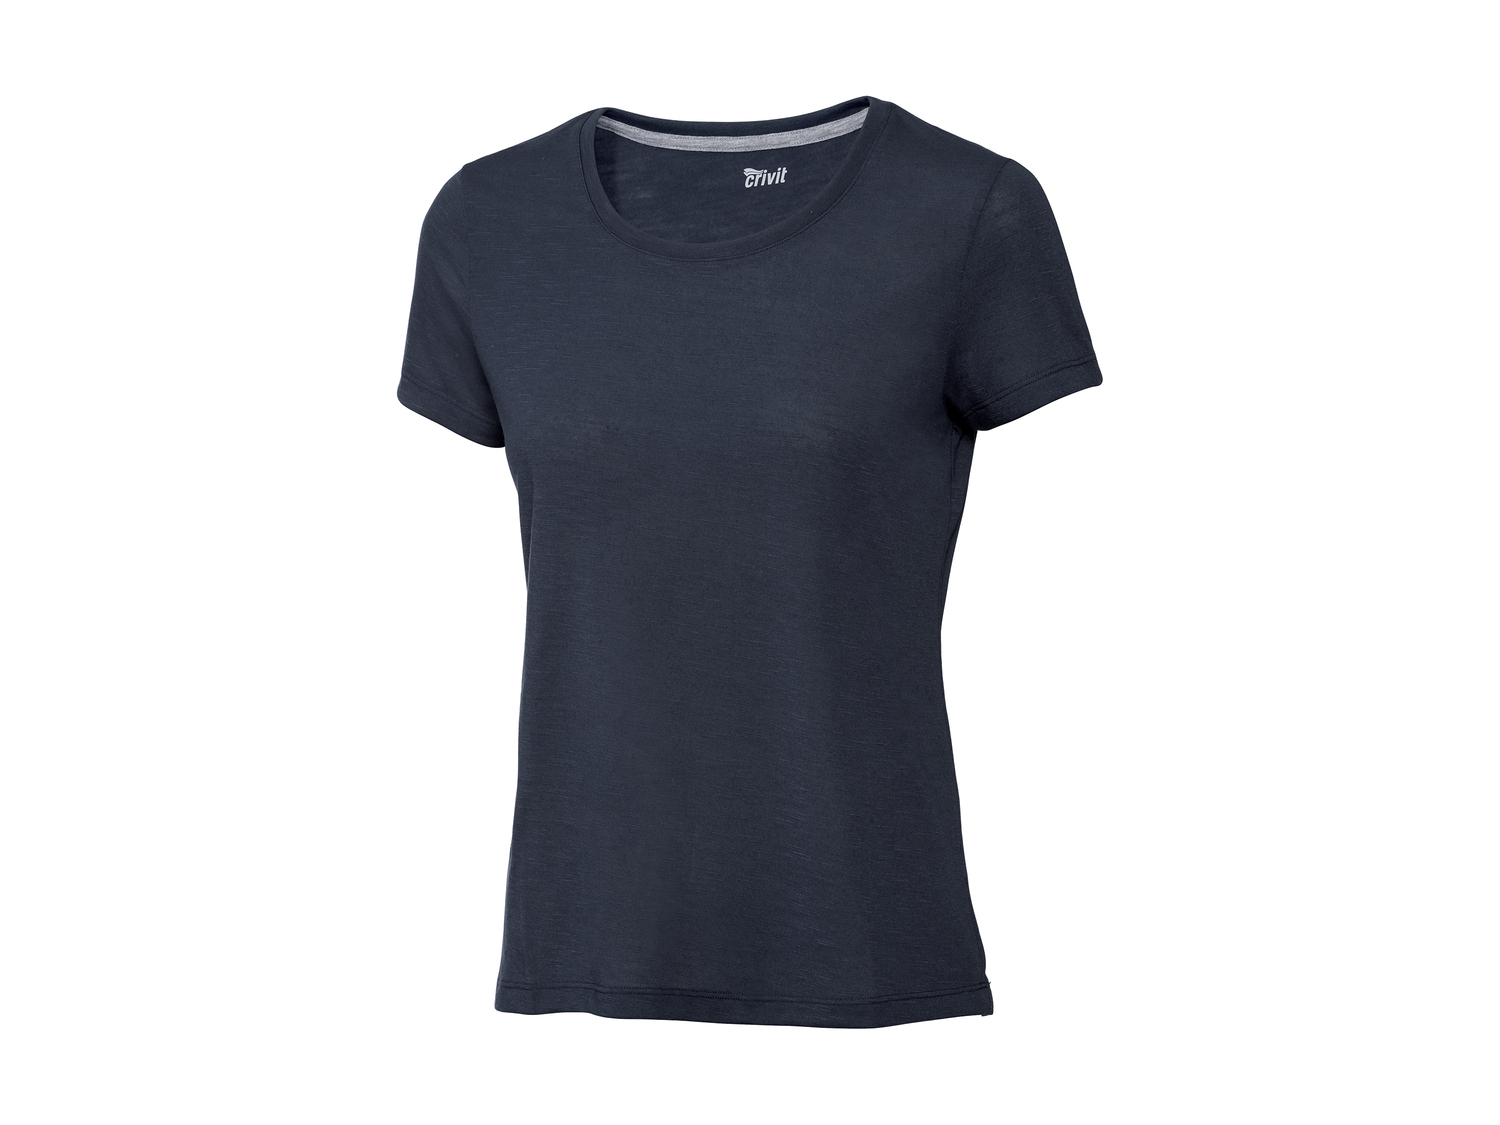 T-shirt femme , le prix 3.99 € 
- Ex. 100 % polyester.
- Du S au XL selon modèle
- ...